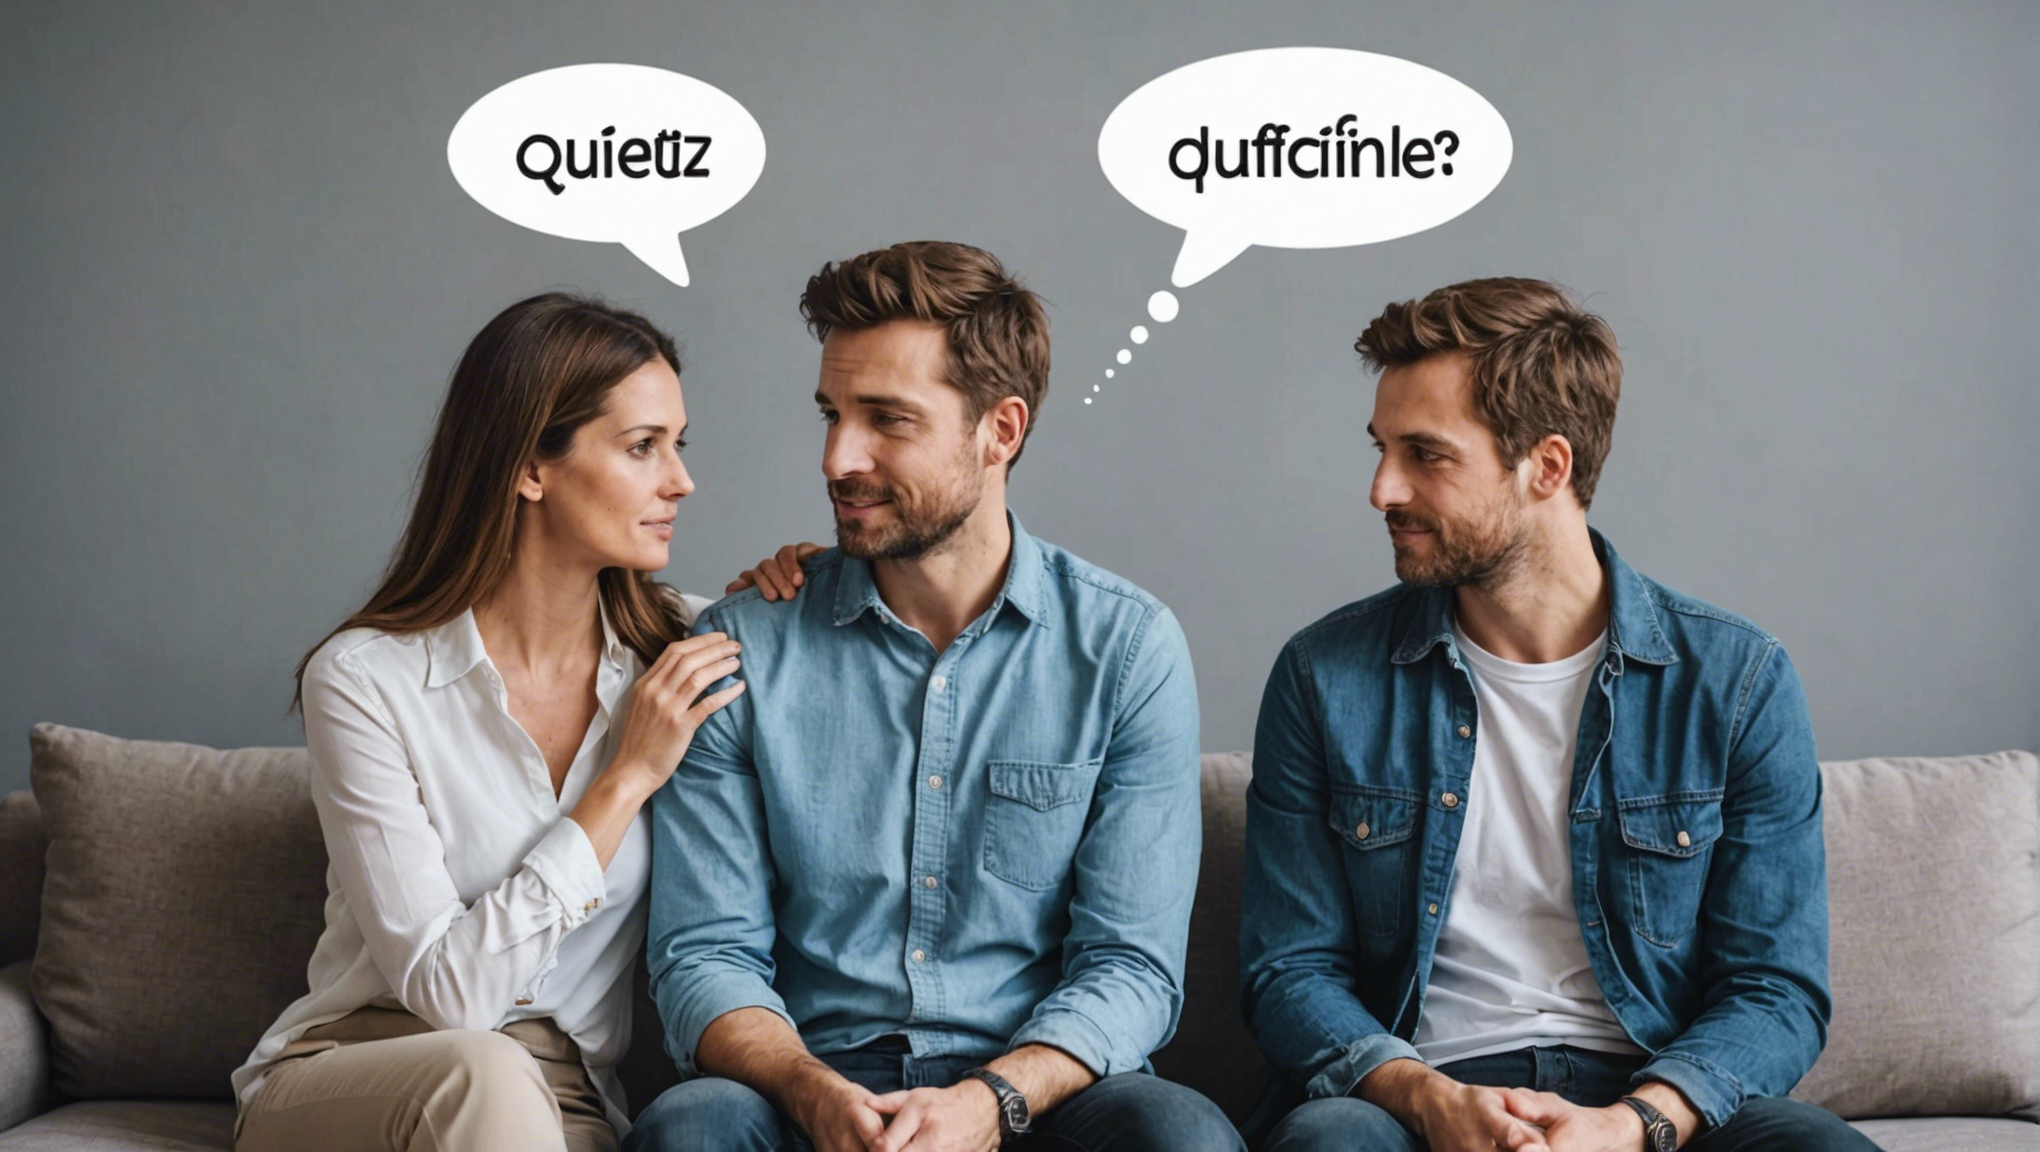 découvrez comment distinguer les mots couples difficiles pour améliorer votre orthographe et votre compréhension linguistique.